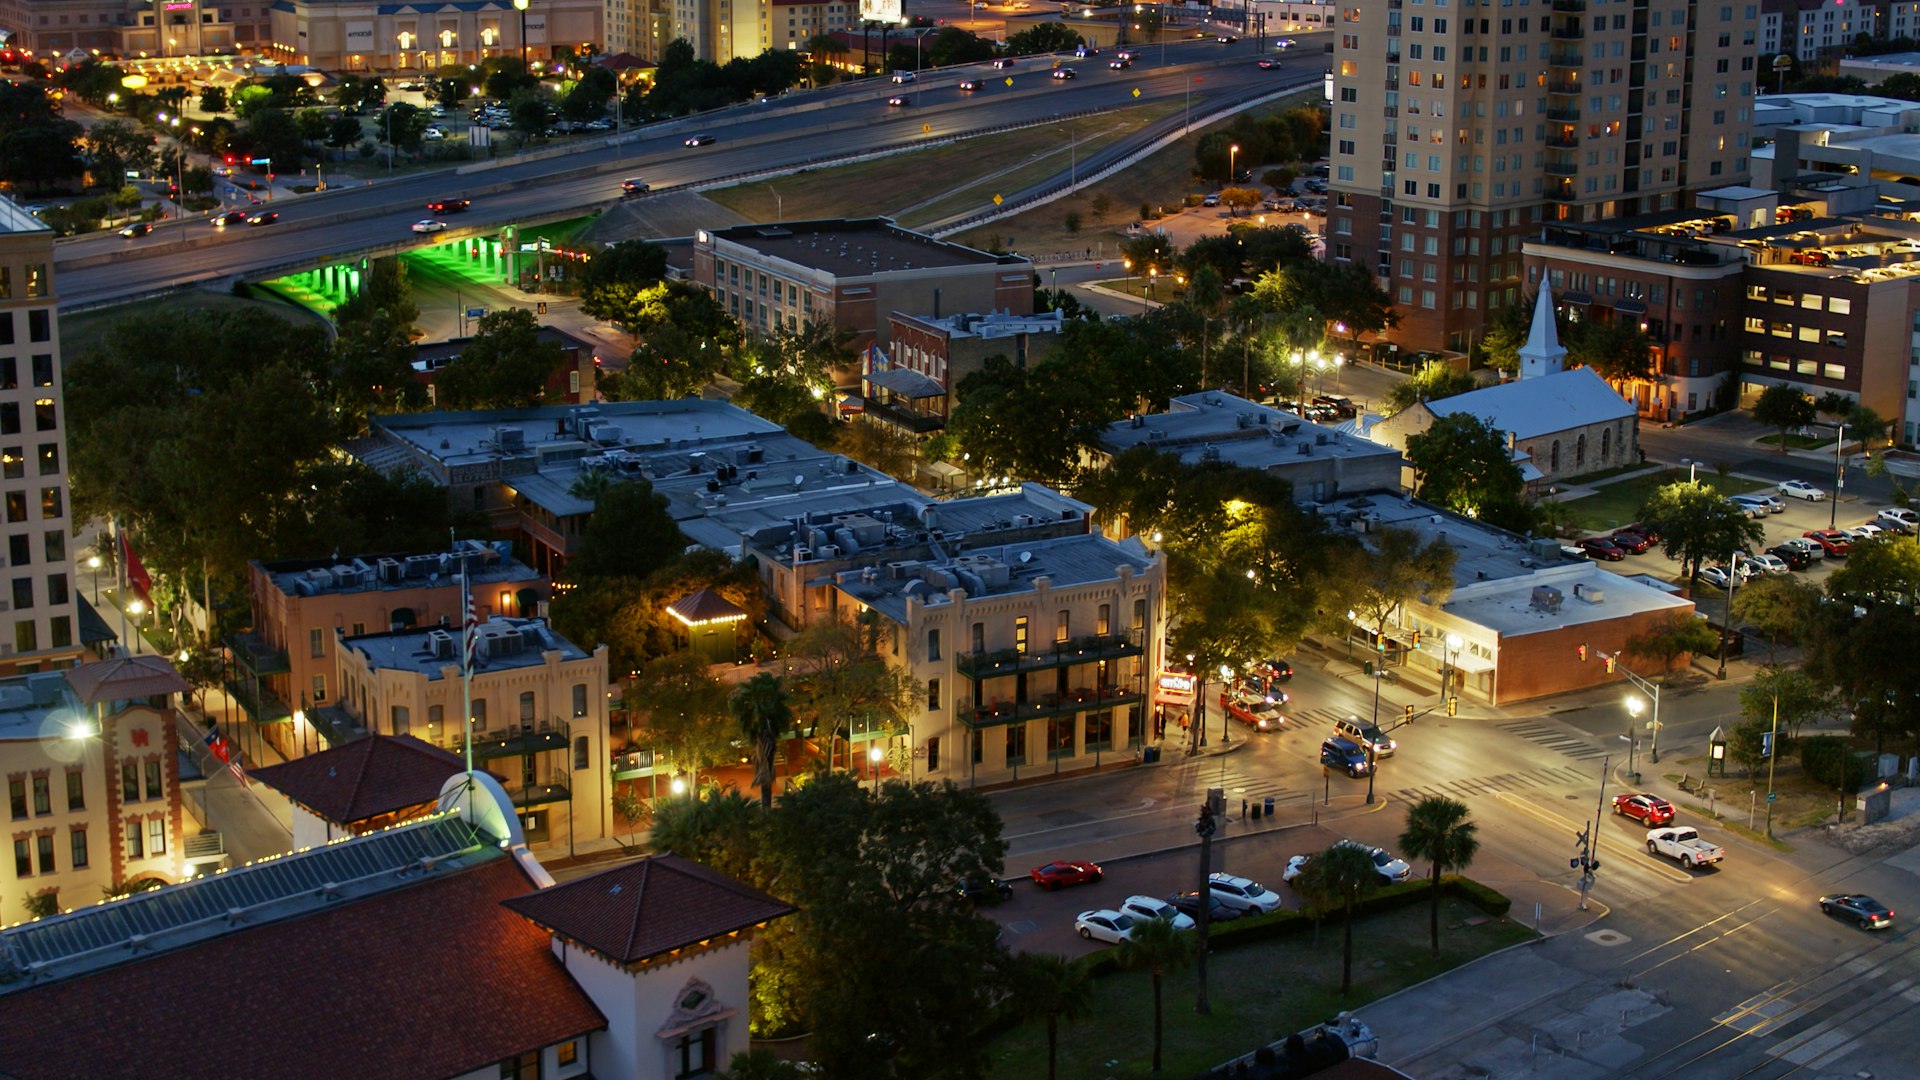 St Paul Square District in San Antonio, Texas - Aerial